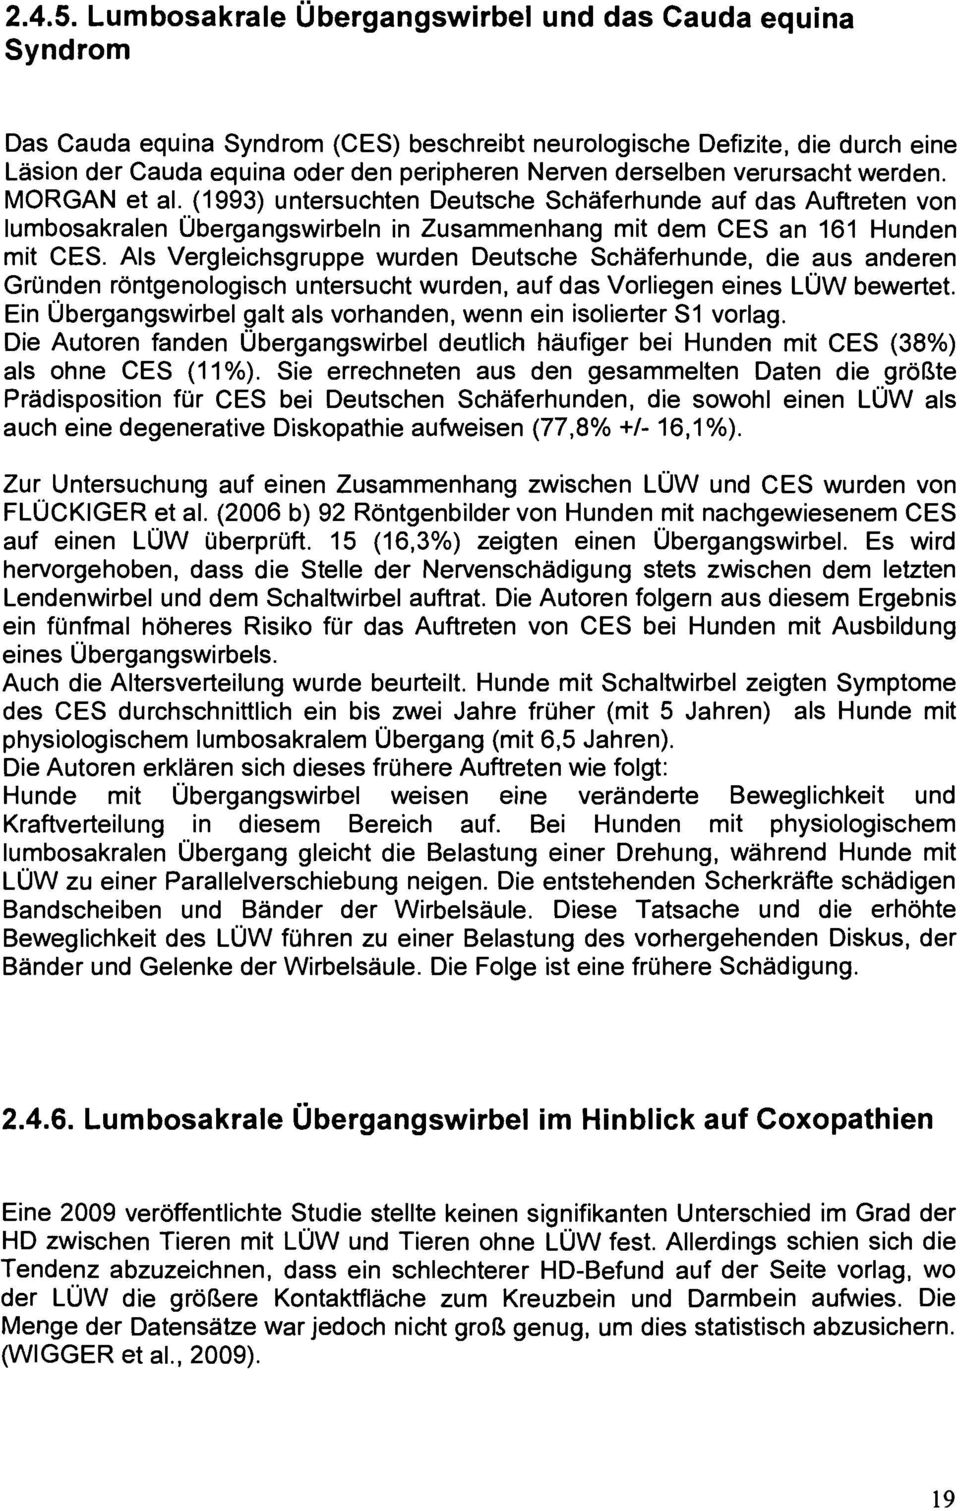 verursacht werden. MORGAN et al. (1993) untersuchten Deutsche Schäferhunde auf das Auftreten von lumbosakralen Übergangswirbeln in Zusammenhang mit dem CES an 161 Hunden mit CES.